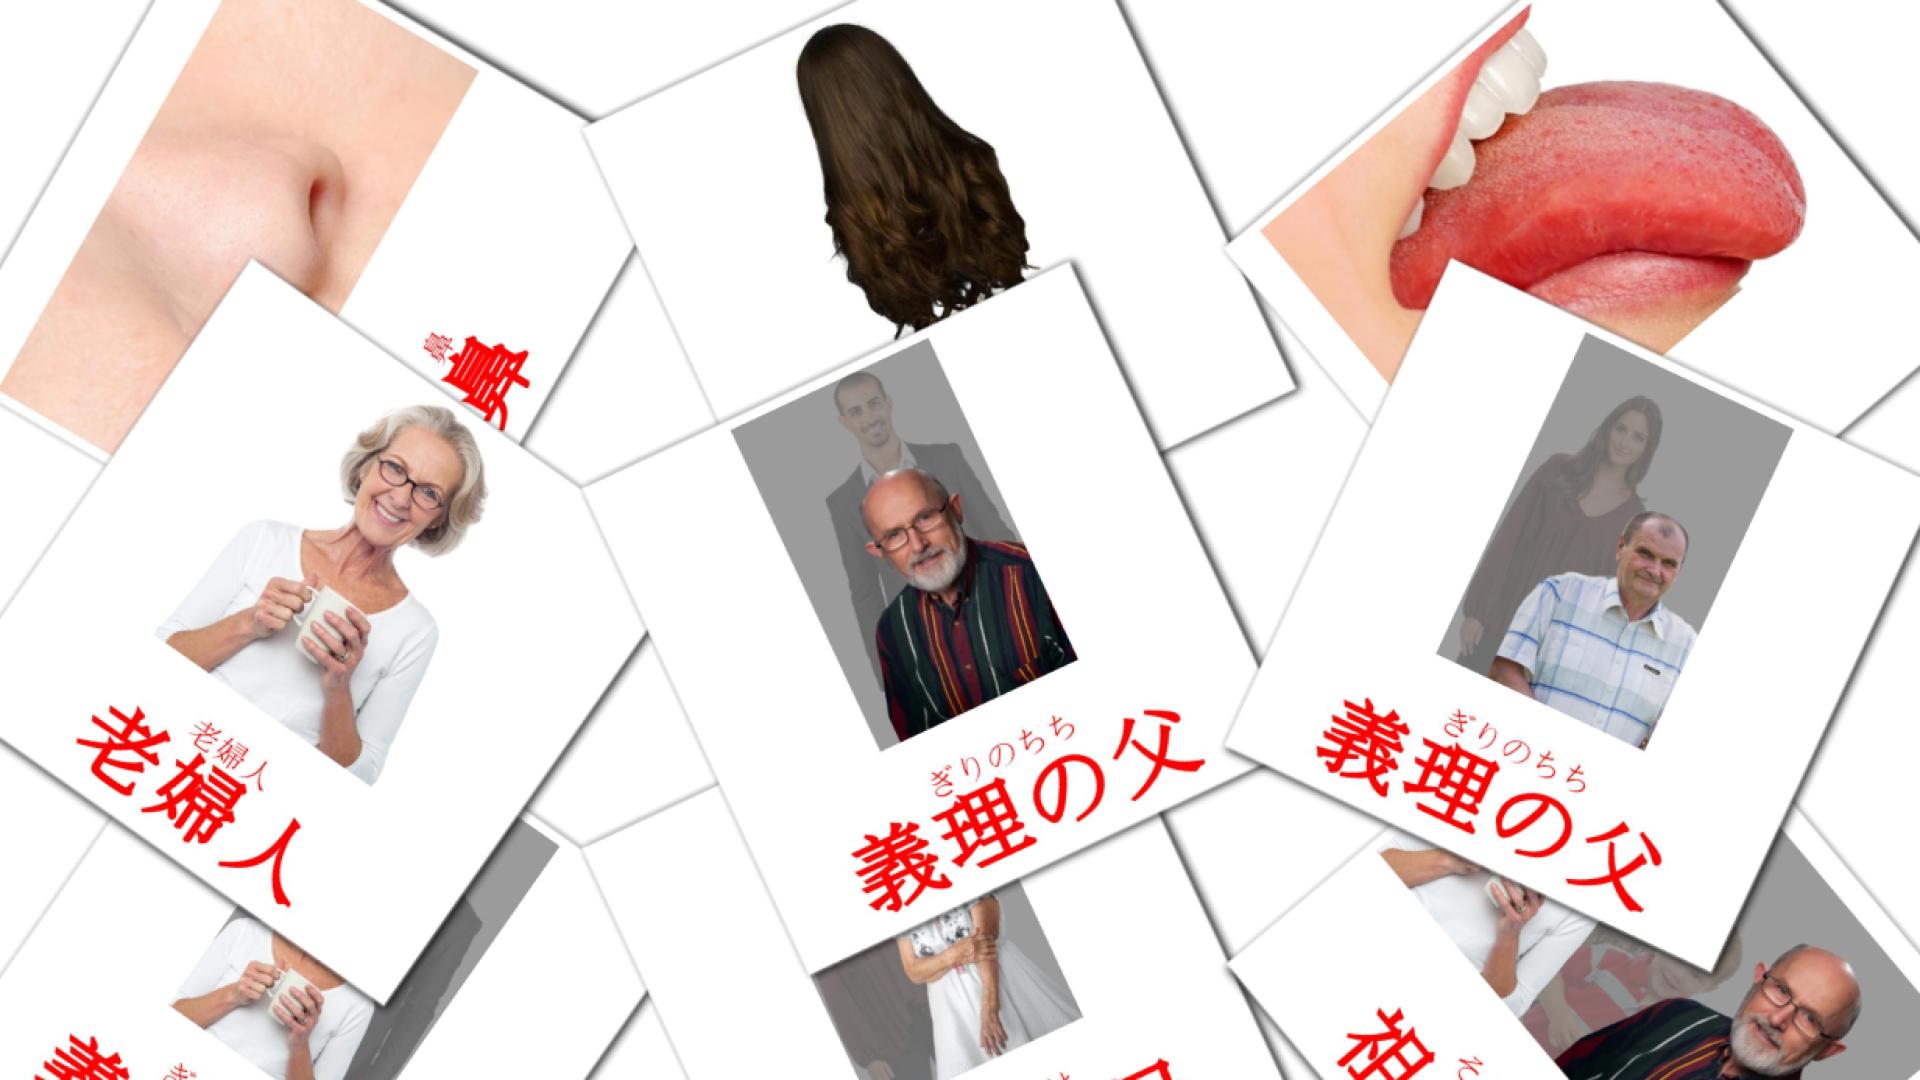 人 japanese vocabulary flashcards